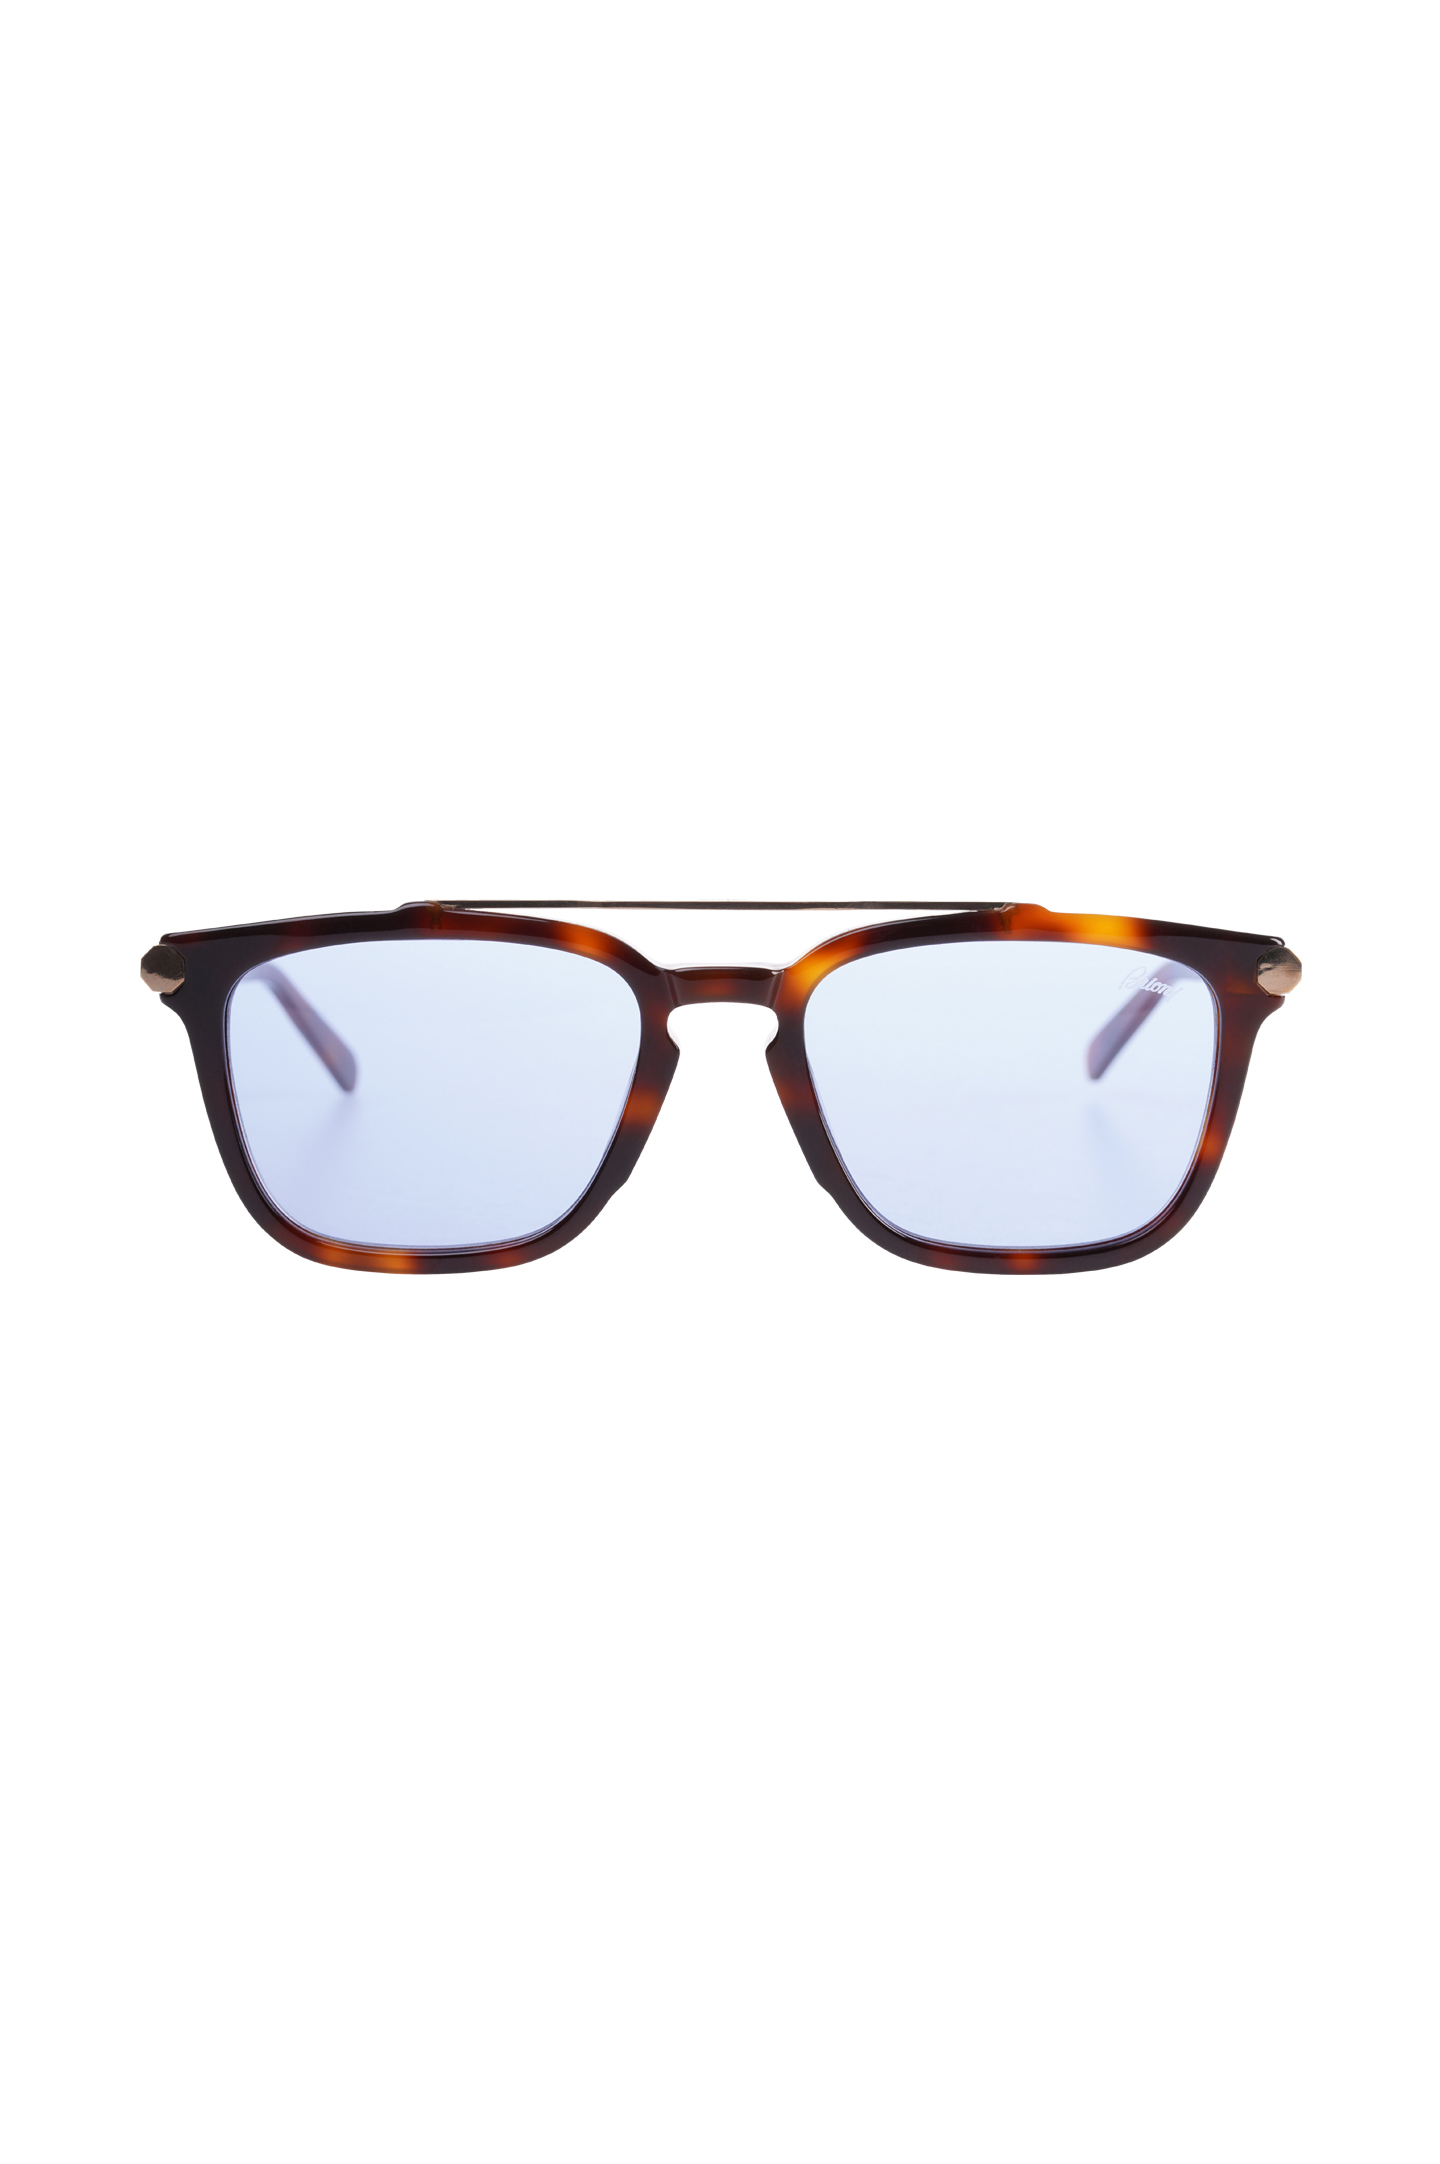 Солнцезащитные очки BRIONI ODC500 P3ZAC, цвет: Коричневый, Мужской